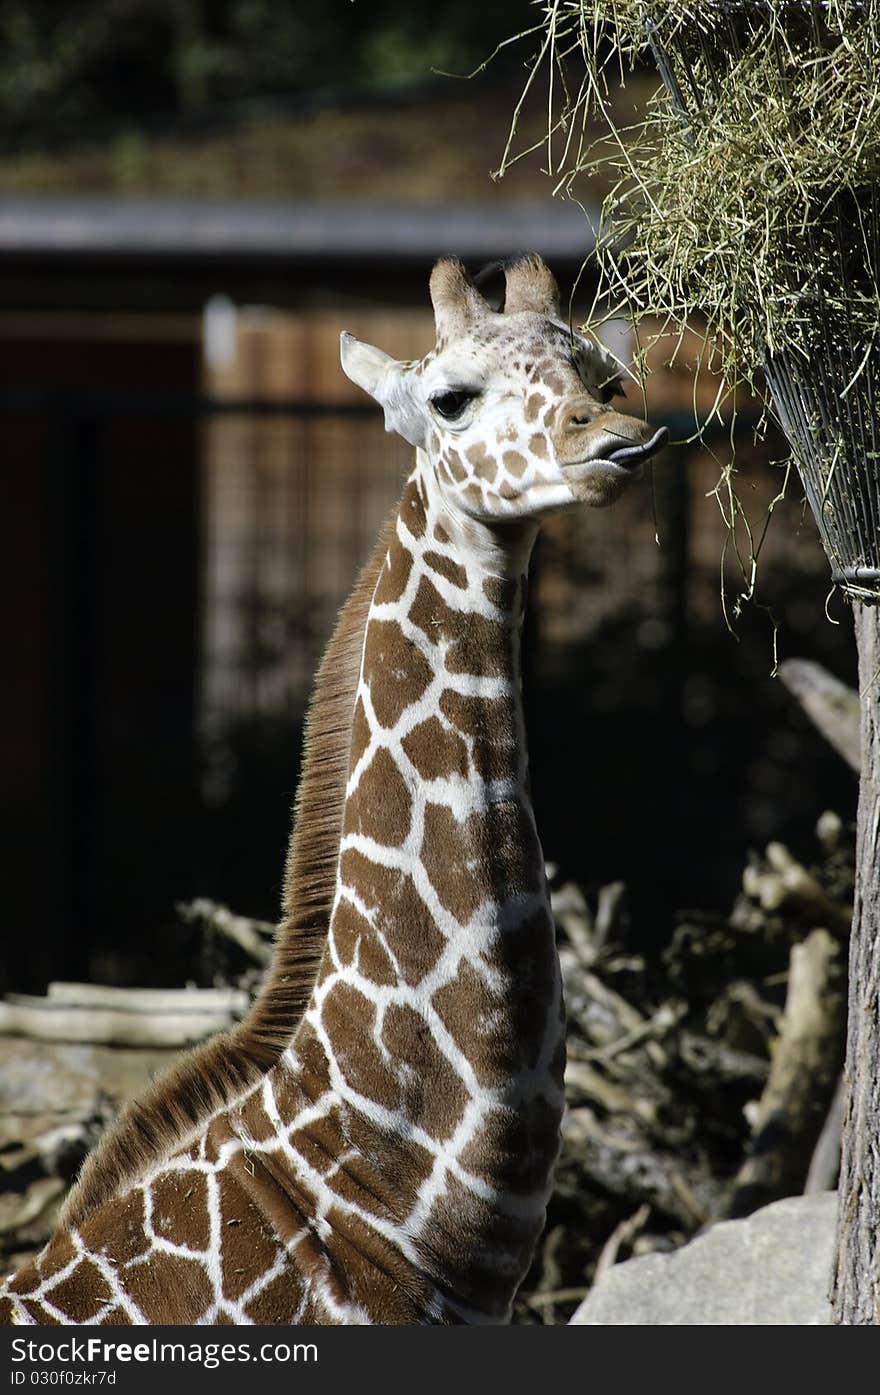 A giraffe at a feeding place